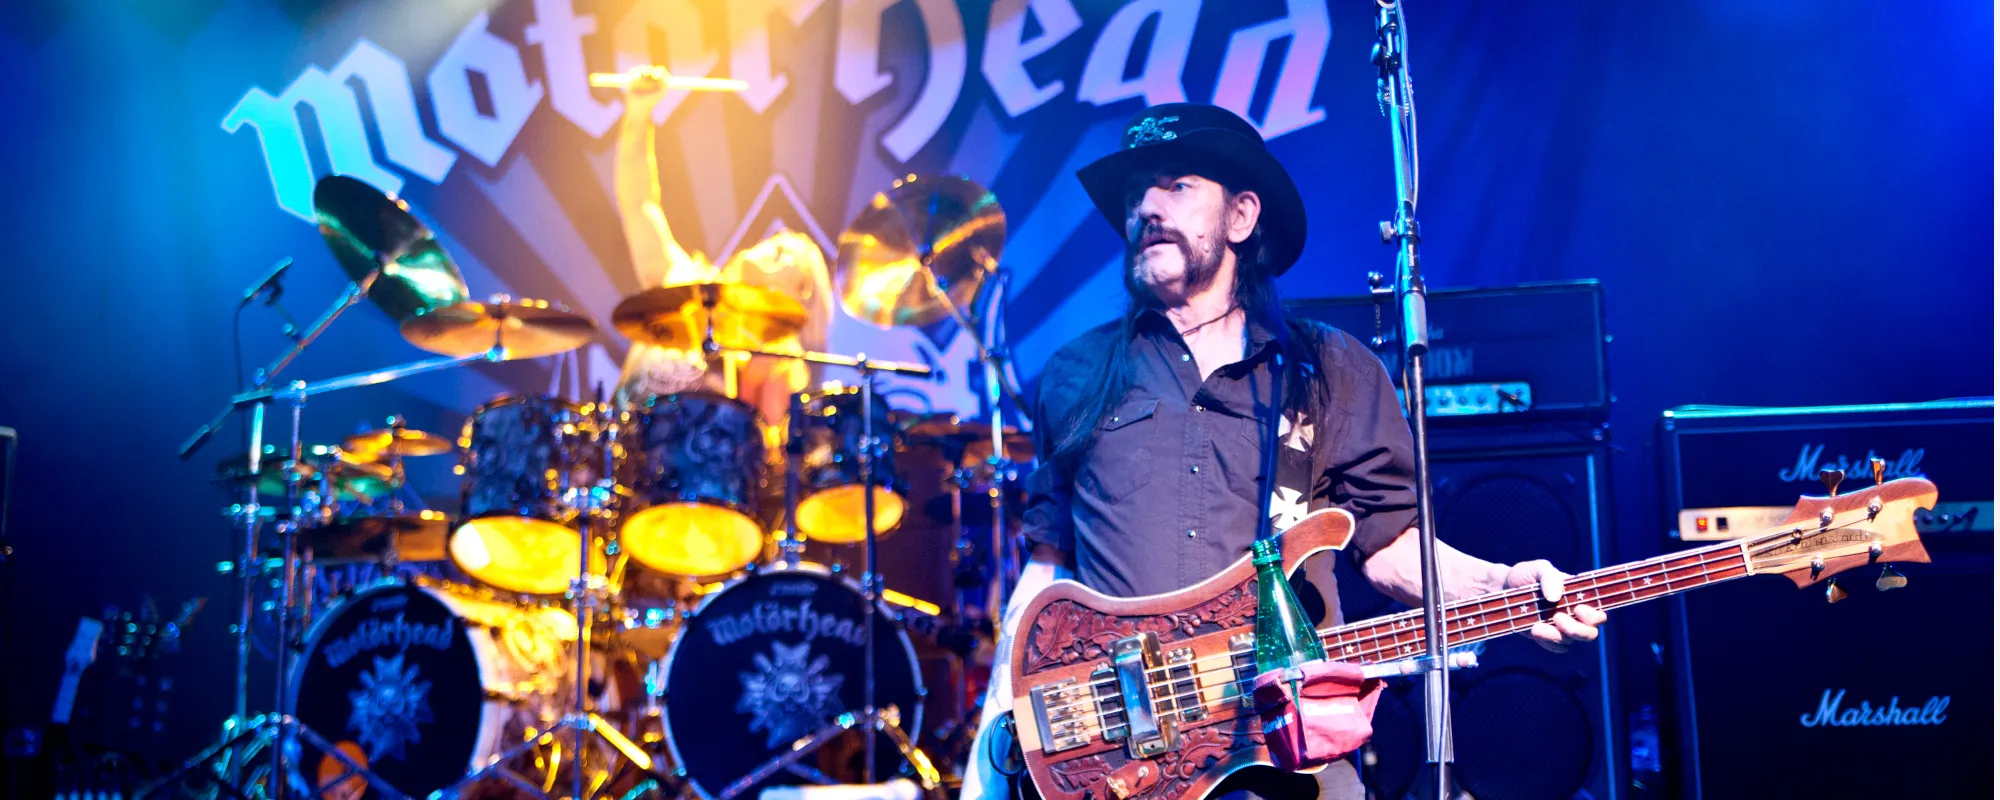 Motörhead’s Late Frontman Lemmy Gets 7-Foot Memorial Statue in Hometown